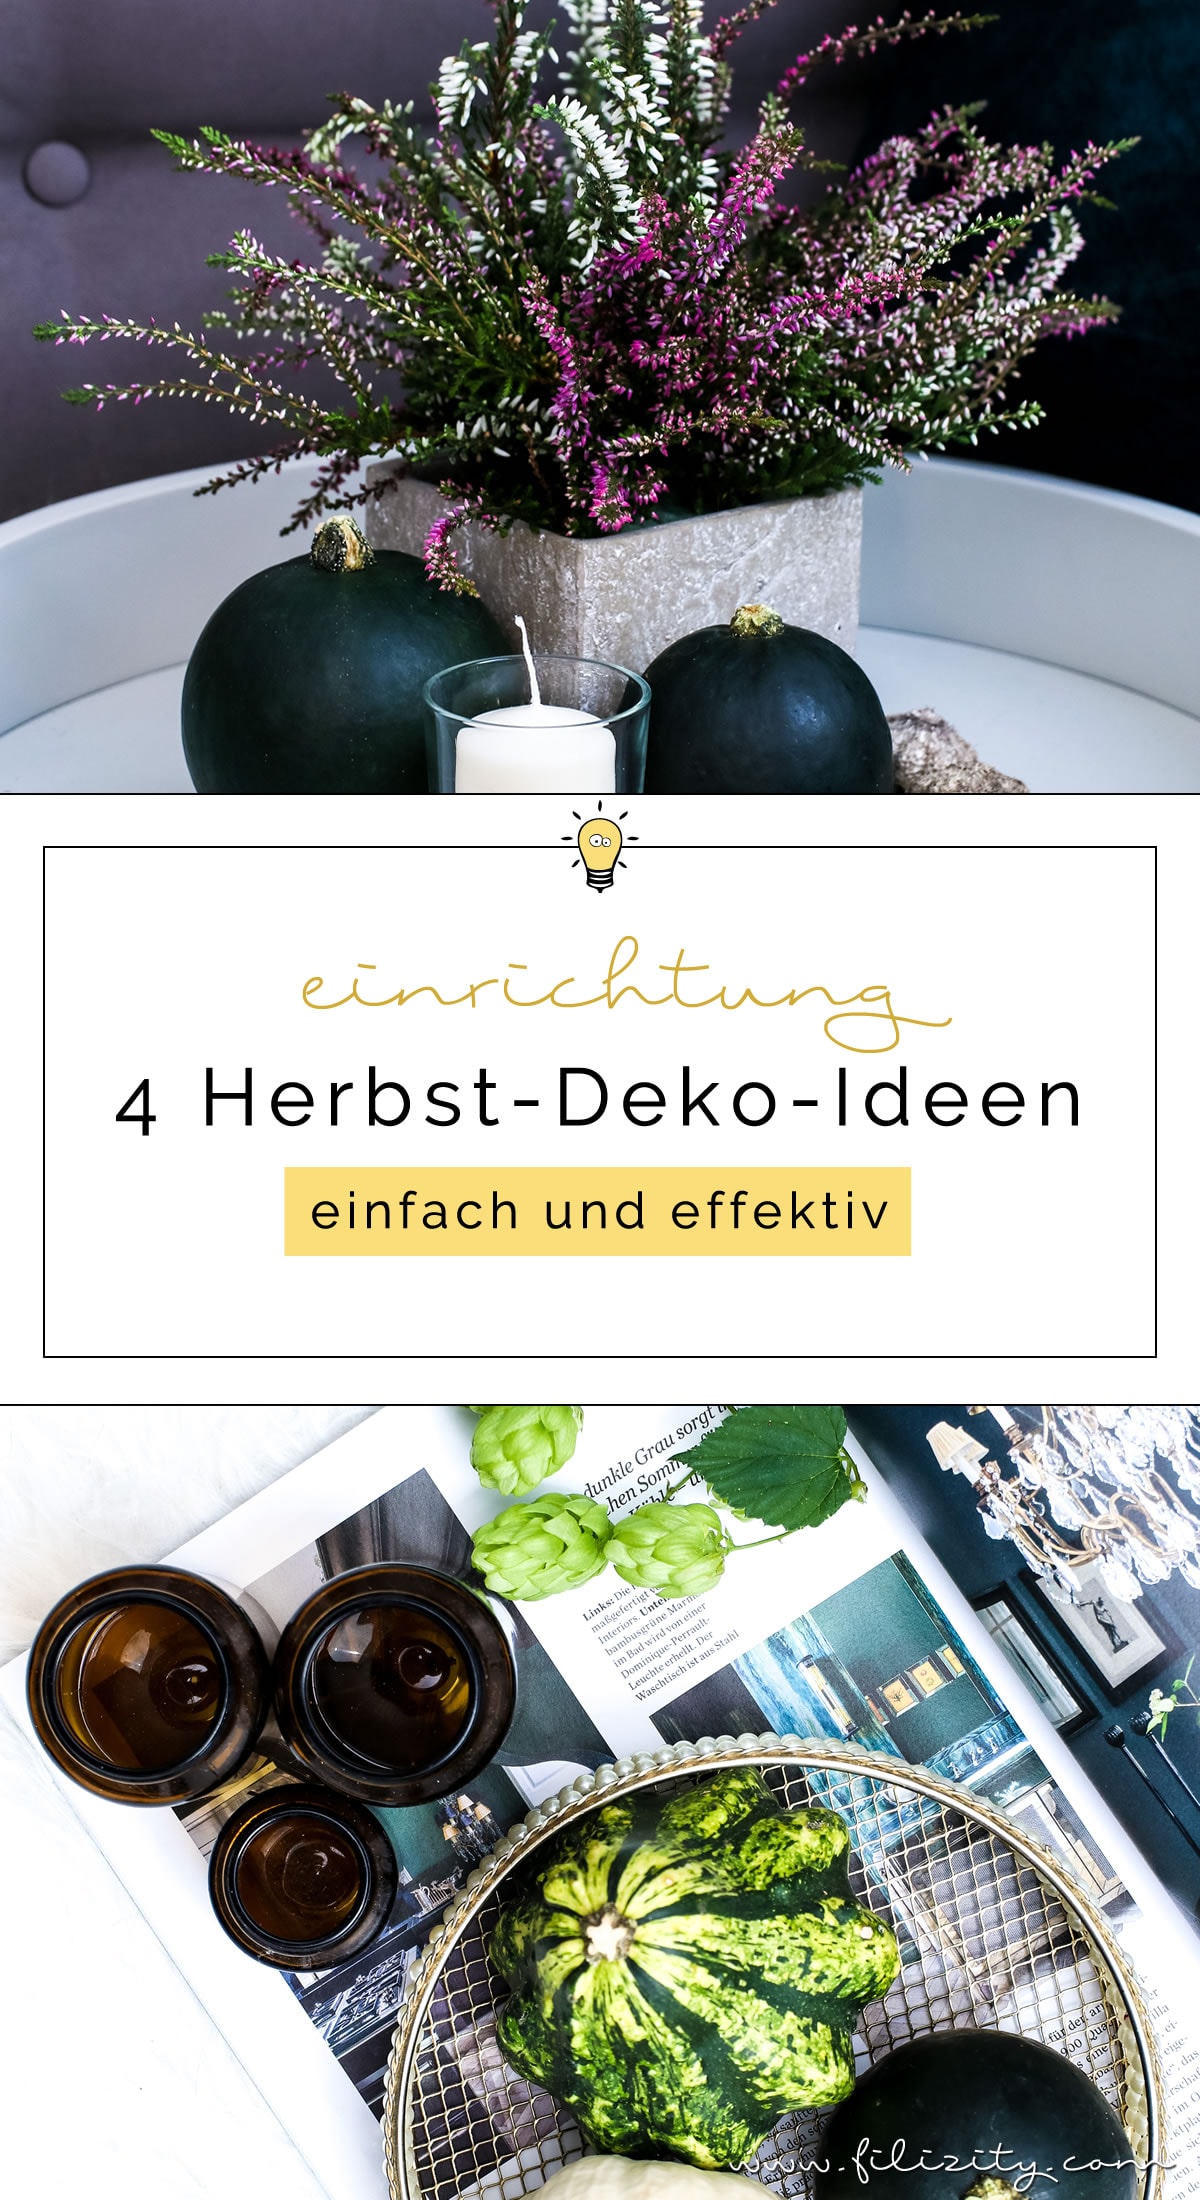 Herbst-Deko leicht gemacht: 4 Ideen für ein gemütliches Zuhause | Filizity.com | DIY- & Interior-Blog aus Koblenz #herbst